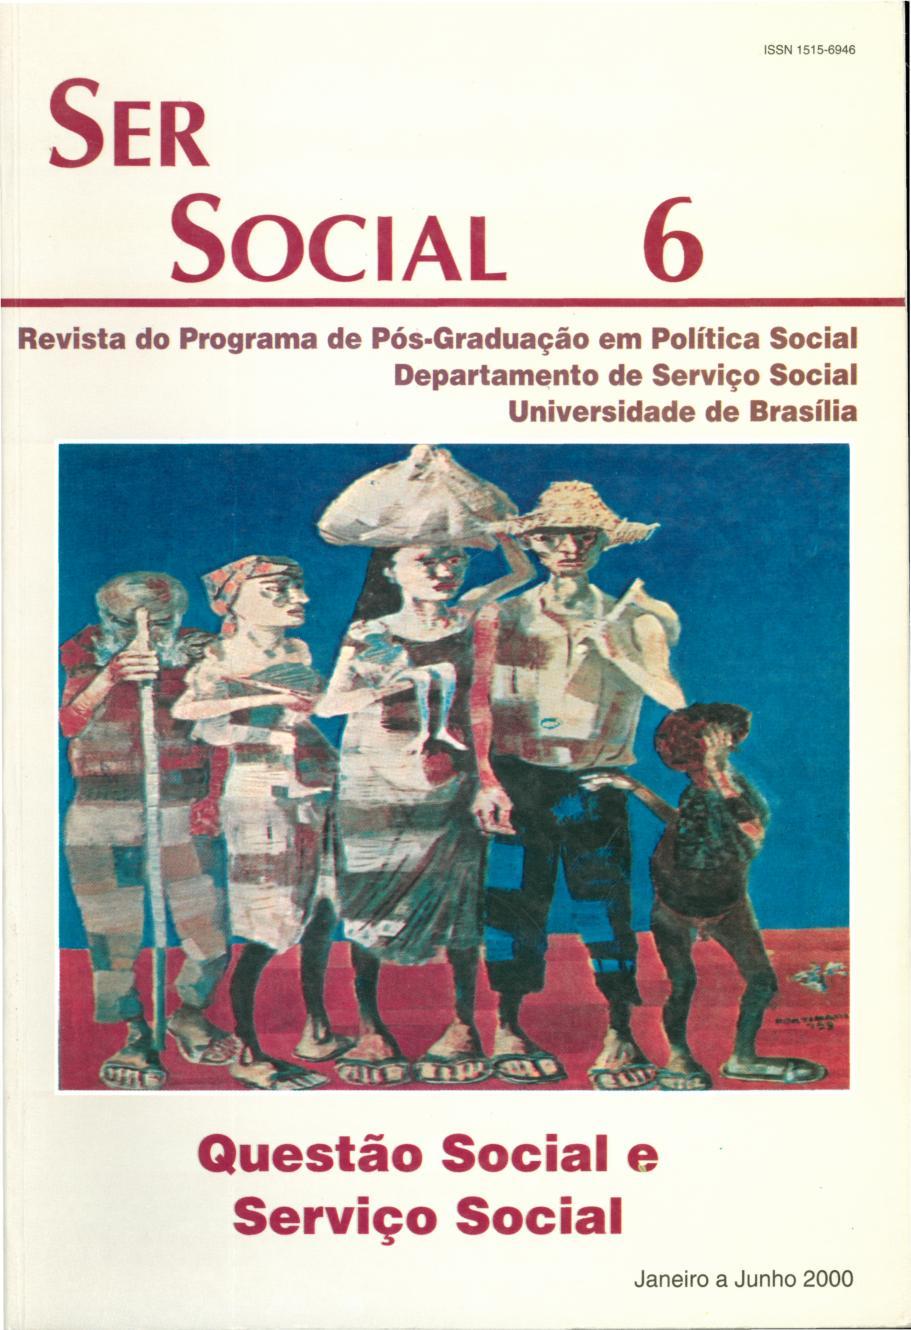 					View No. 6 (2000): Questão Social e Serviço Social
				